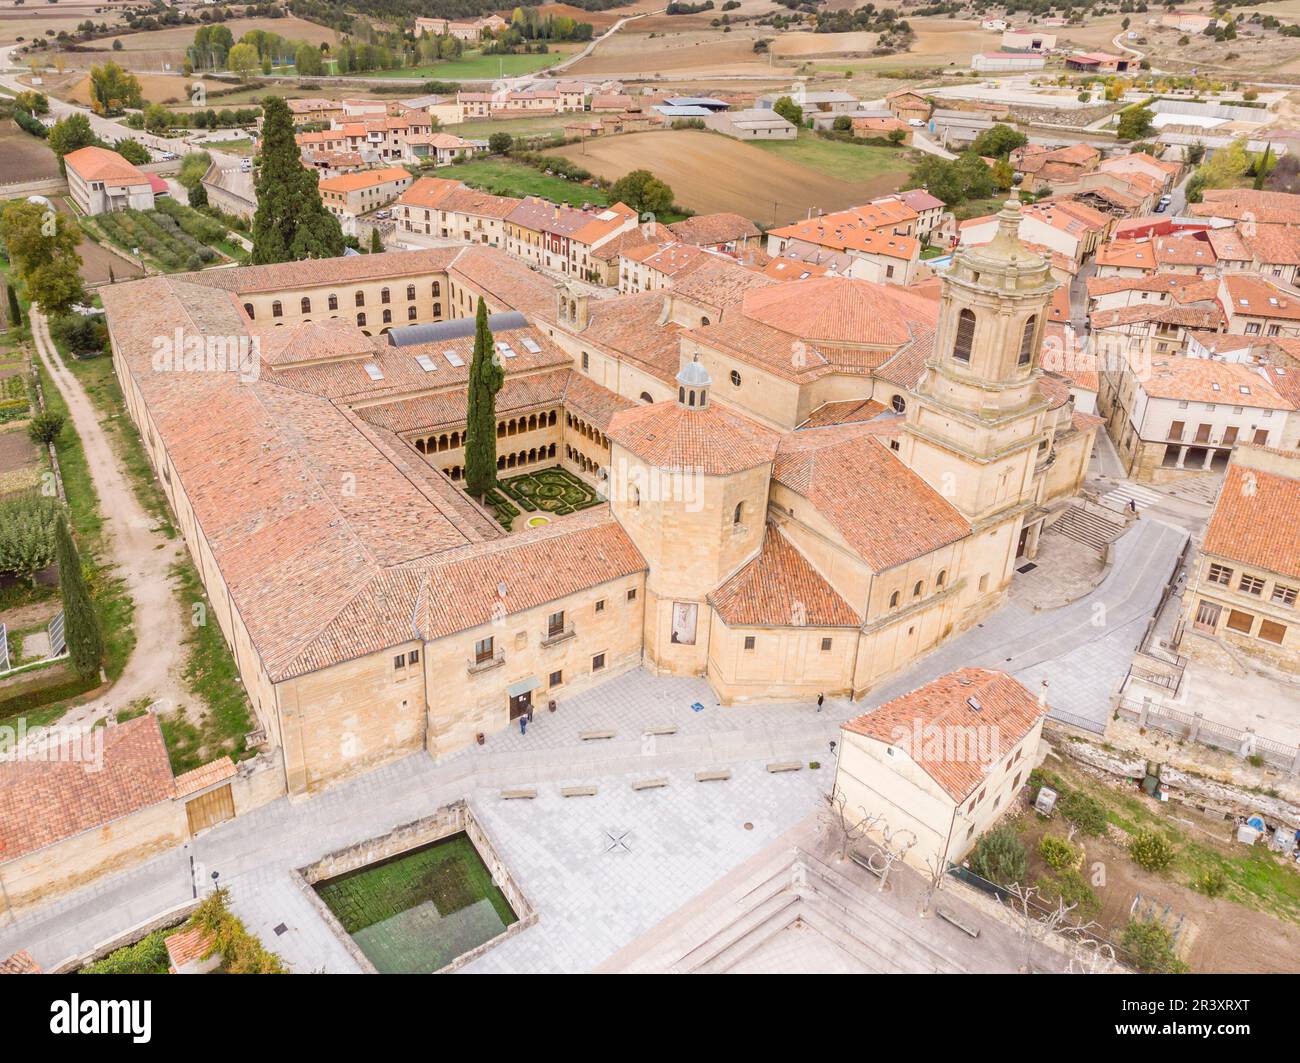 Santo Domingo de Silos, Burgos province, Spain. Stock Photo